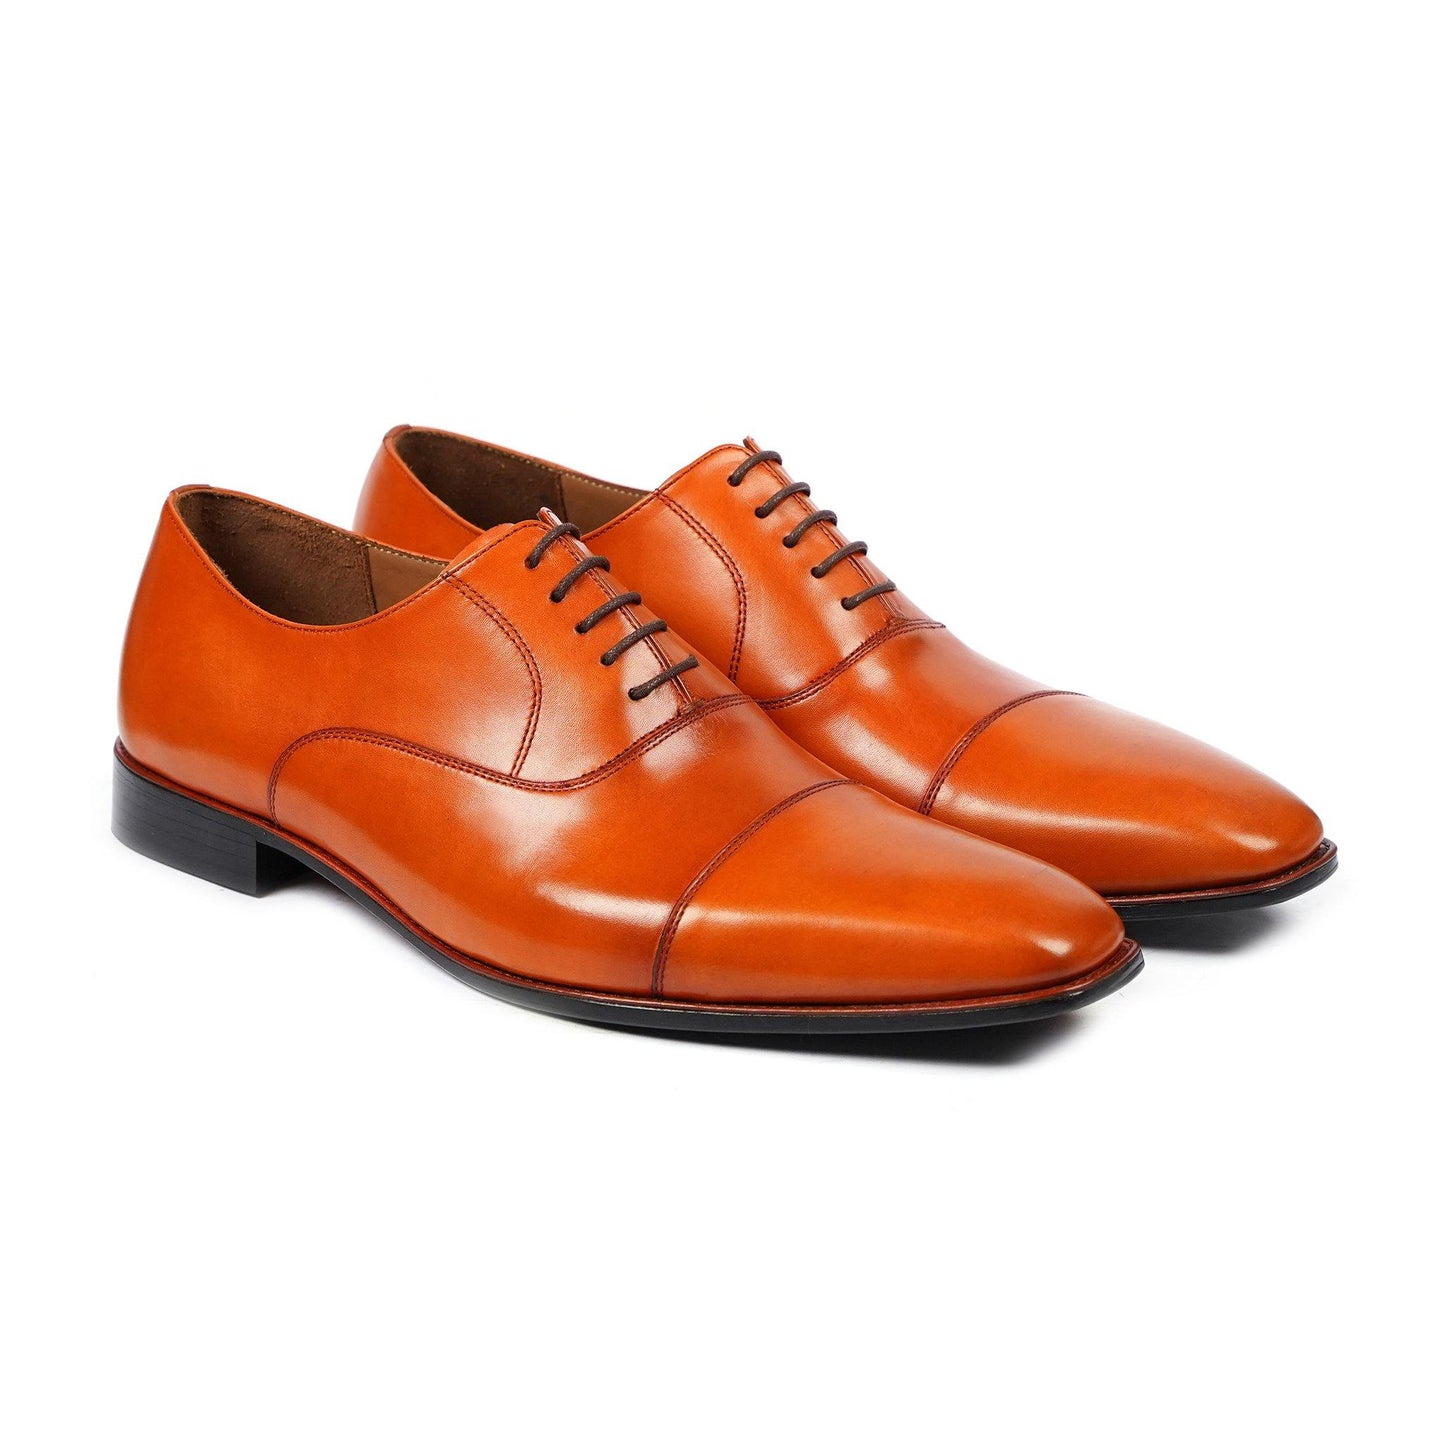 Men's Oxford Shoes - Shop Oxfords for Men Leather Boots, Men's Oxford Shoes, Shop Oxfords for Men